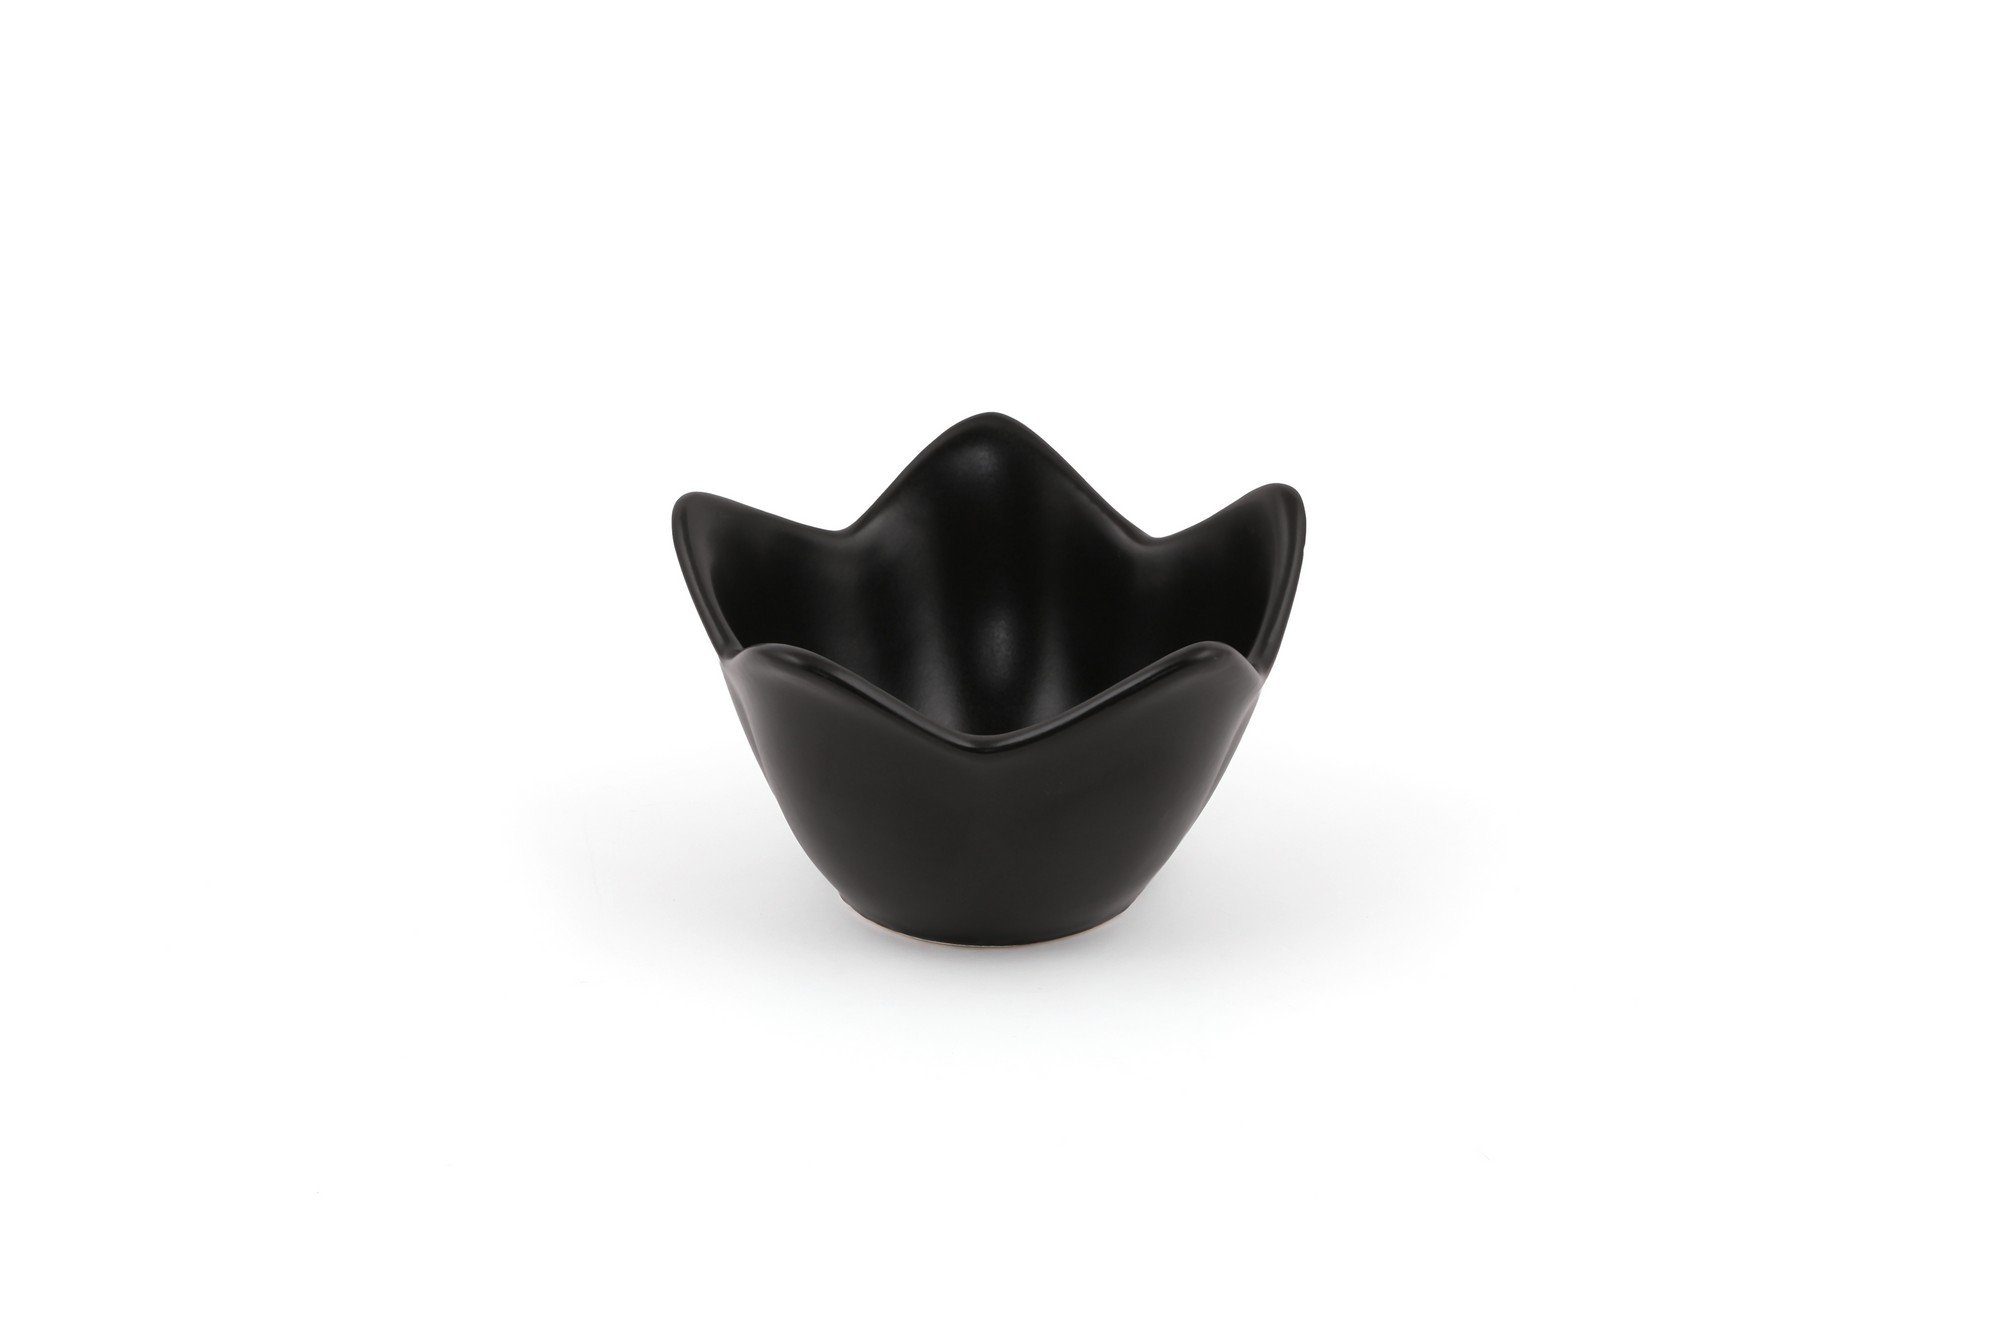 Keramik schwarz, Schüssel Schüsseln, 100% Concept Hermia